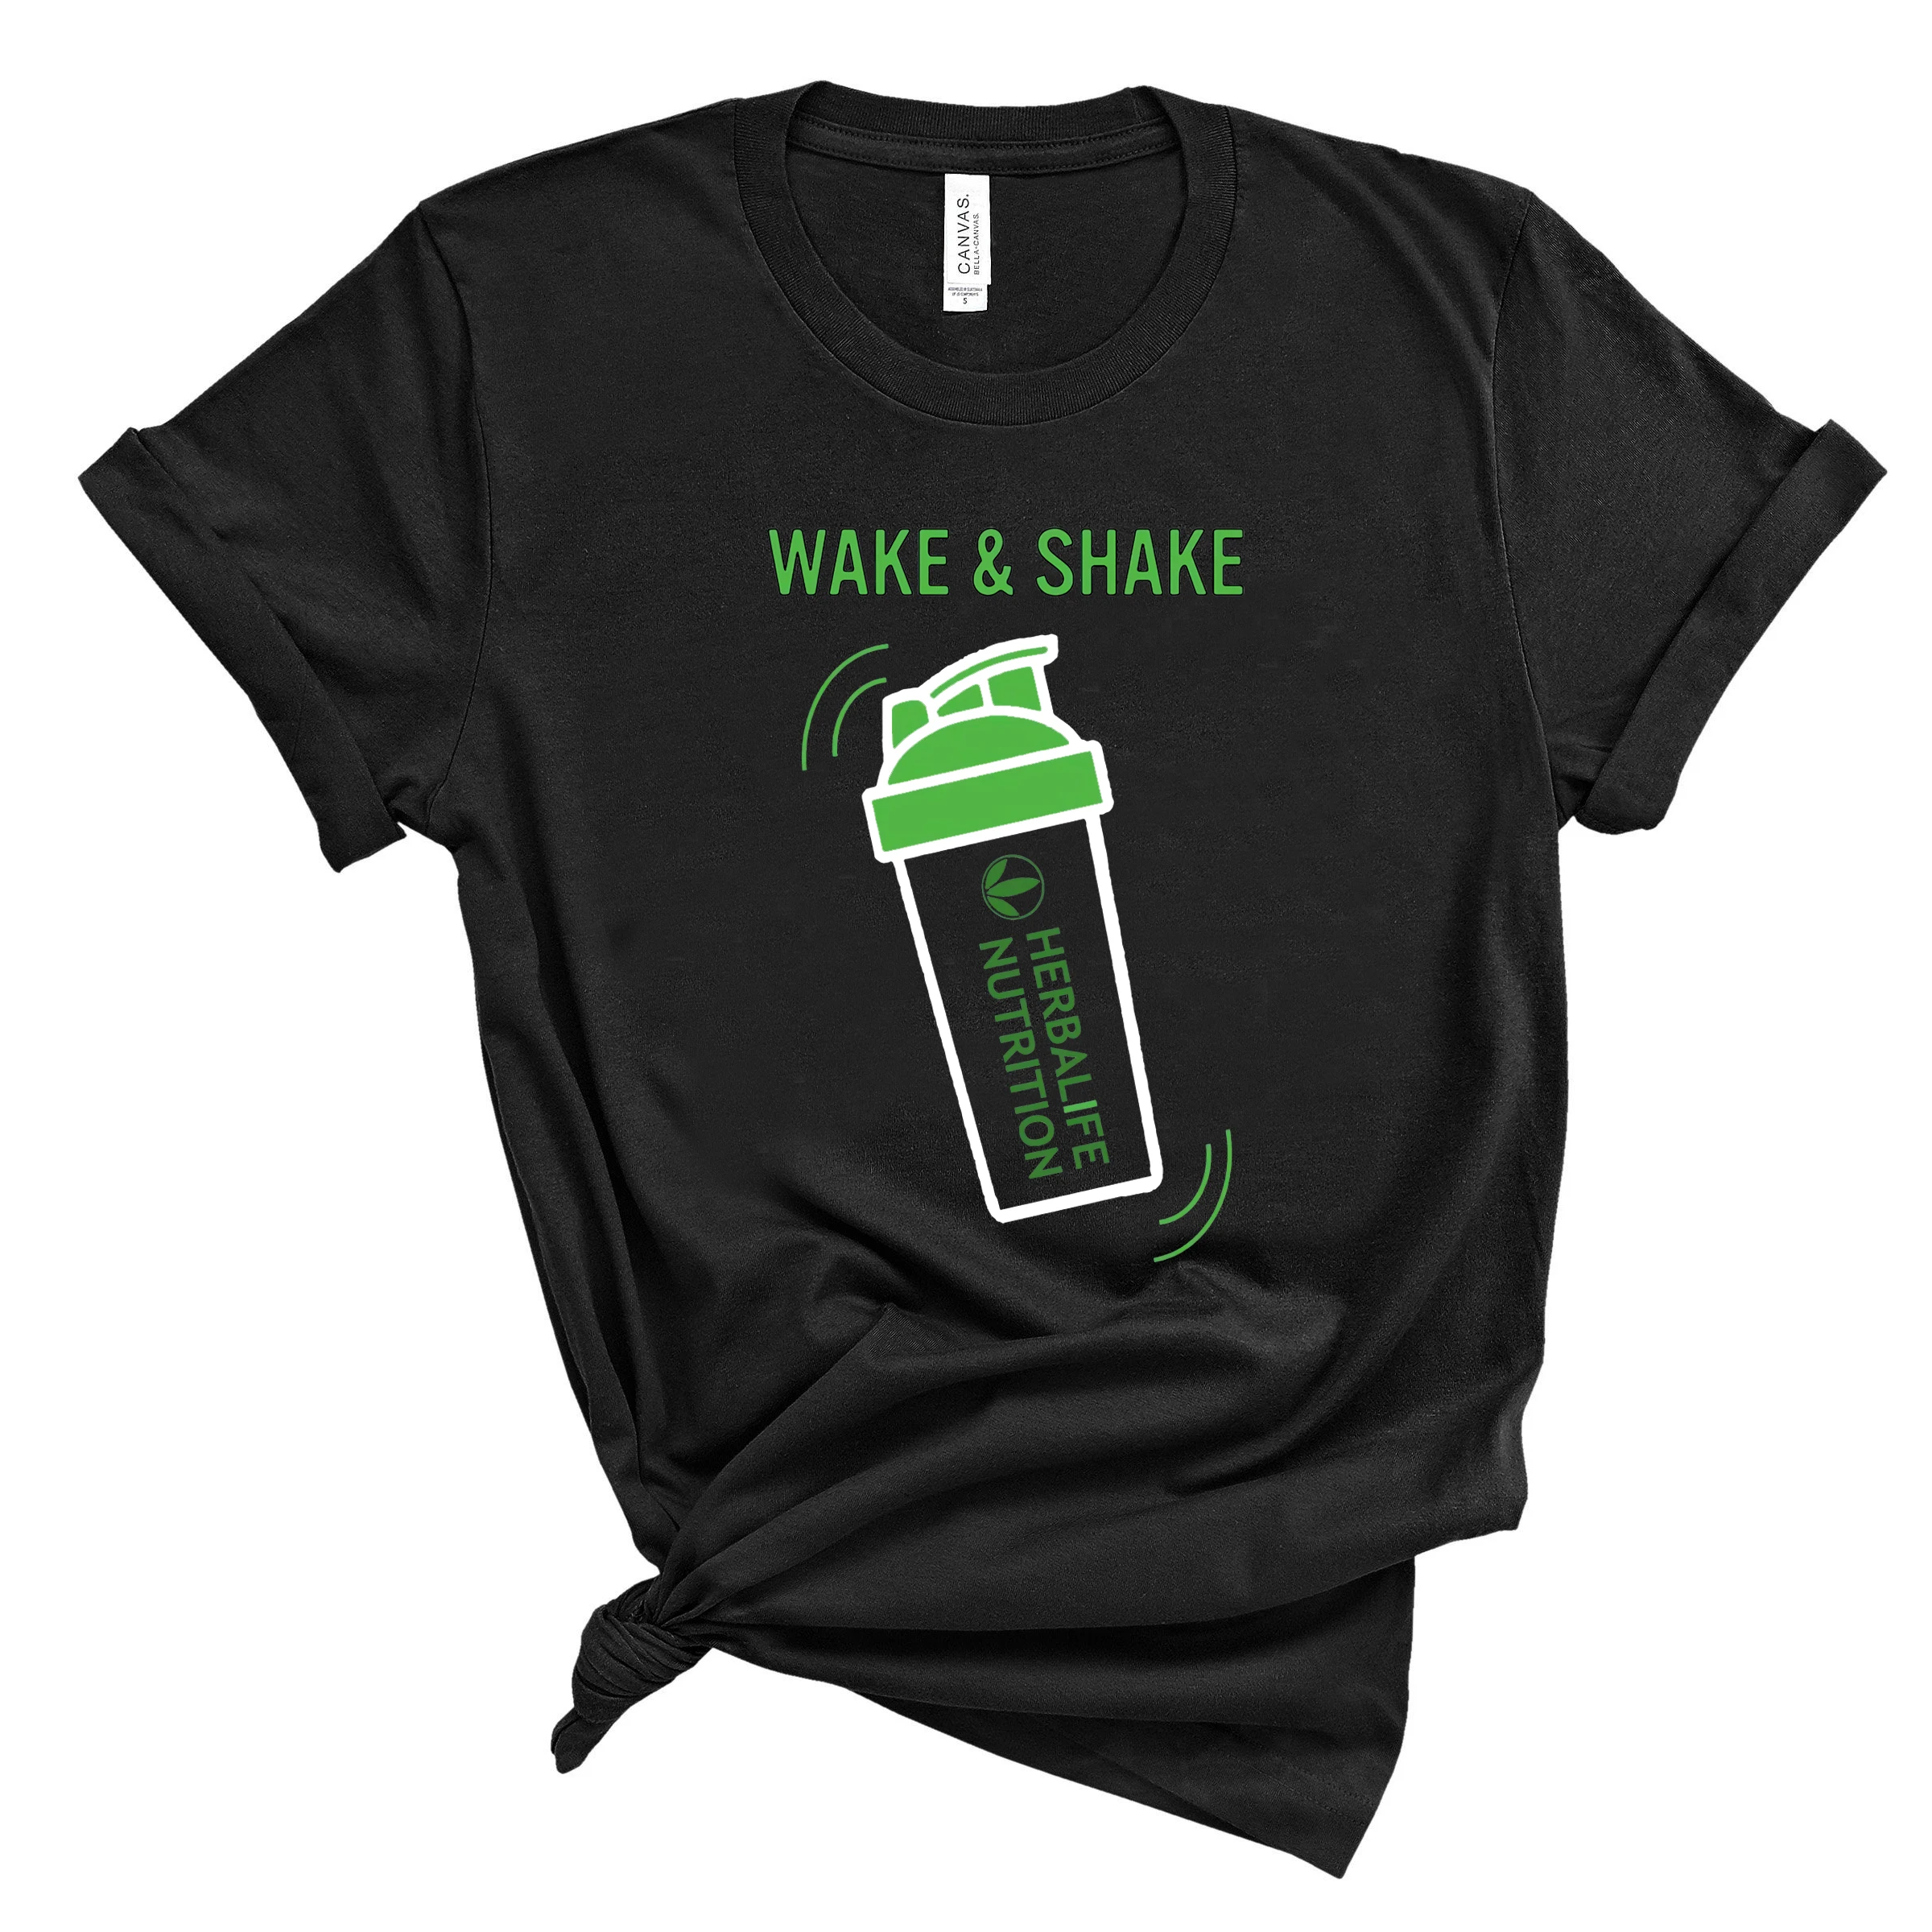 Wake & Shake de Nutrición de Herbalife Camisa Divertida de Herbalife T-shirt de las Mujeres Casual Tops Entrenamiento Camisetas, Además de Tamaño de Harajuku Camisa 2